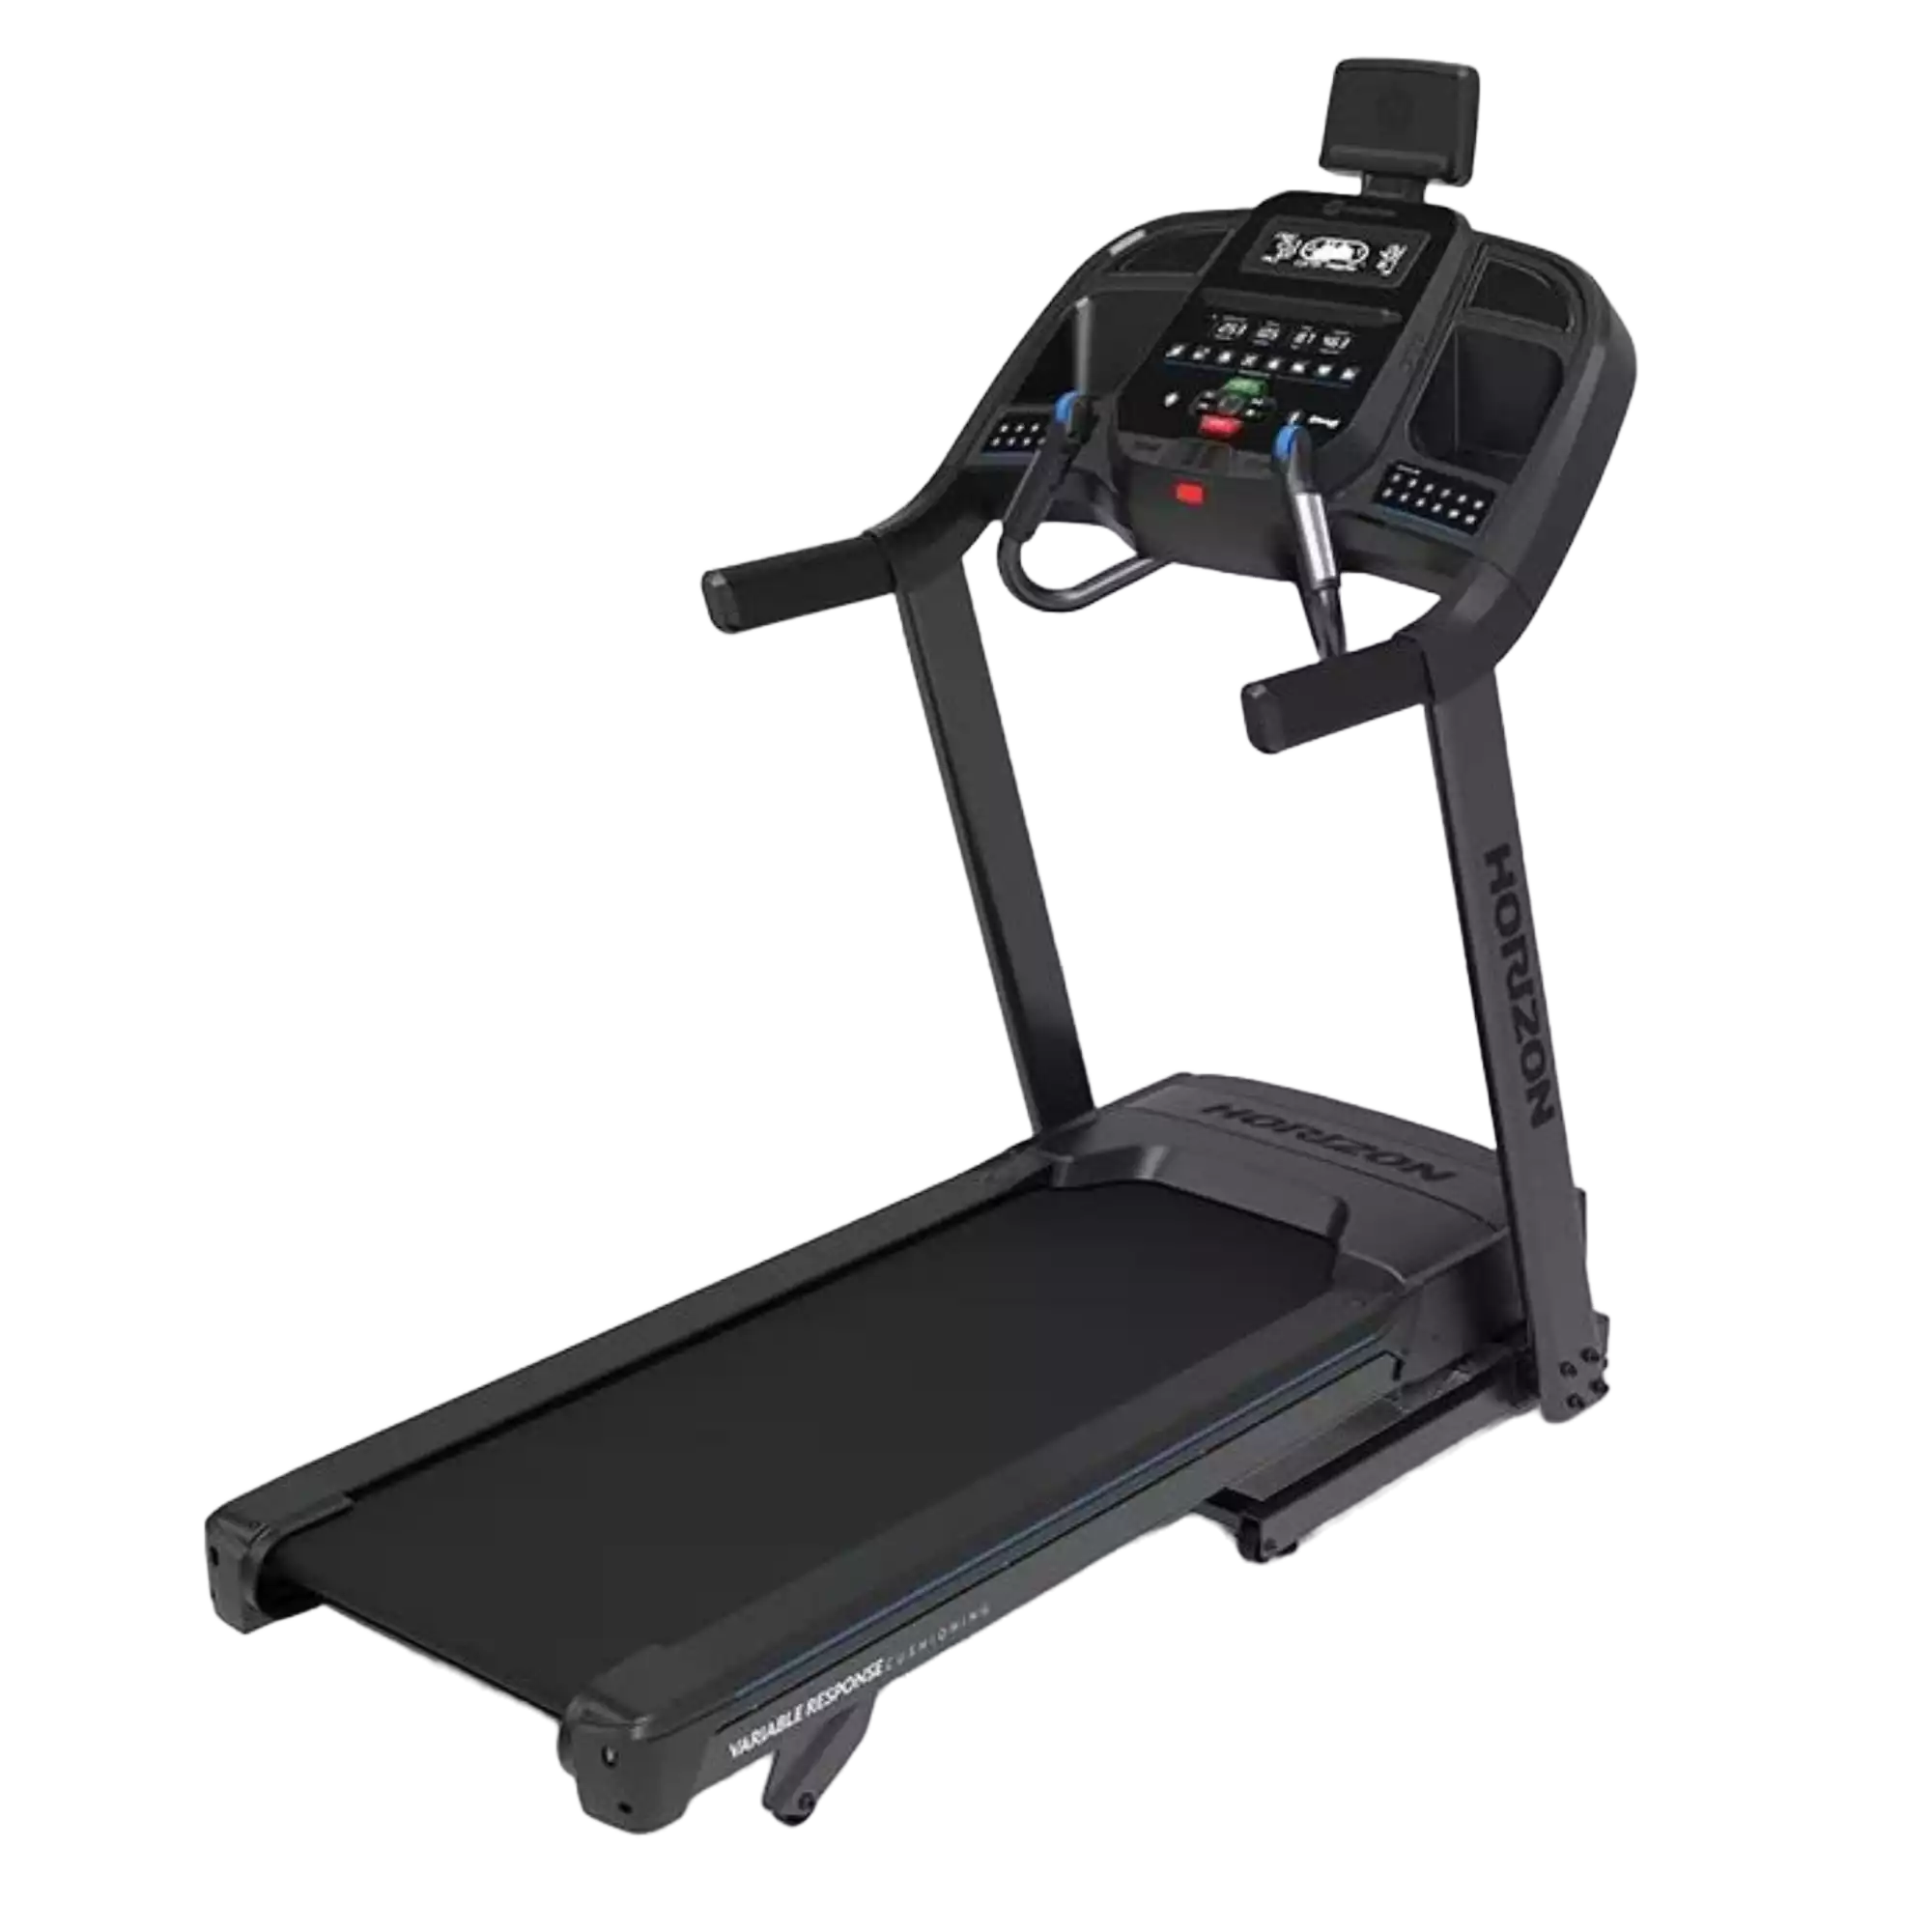 Horizon Fitness 7.0 AT Treadmill